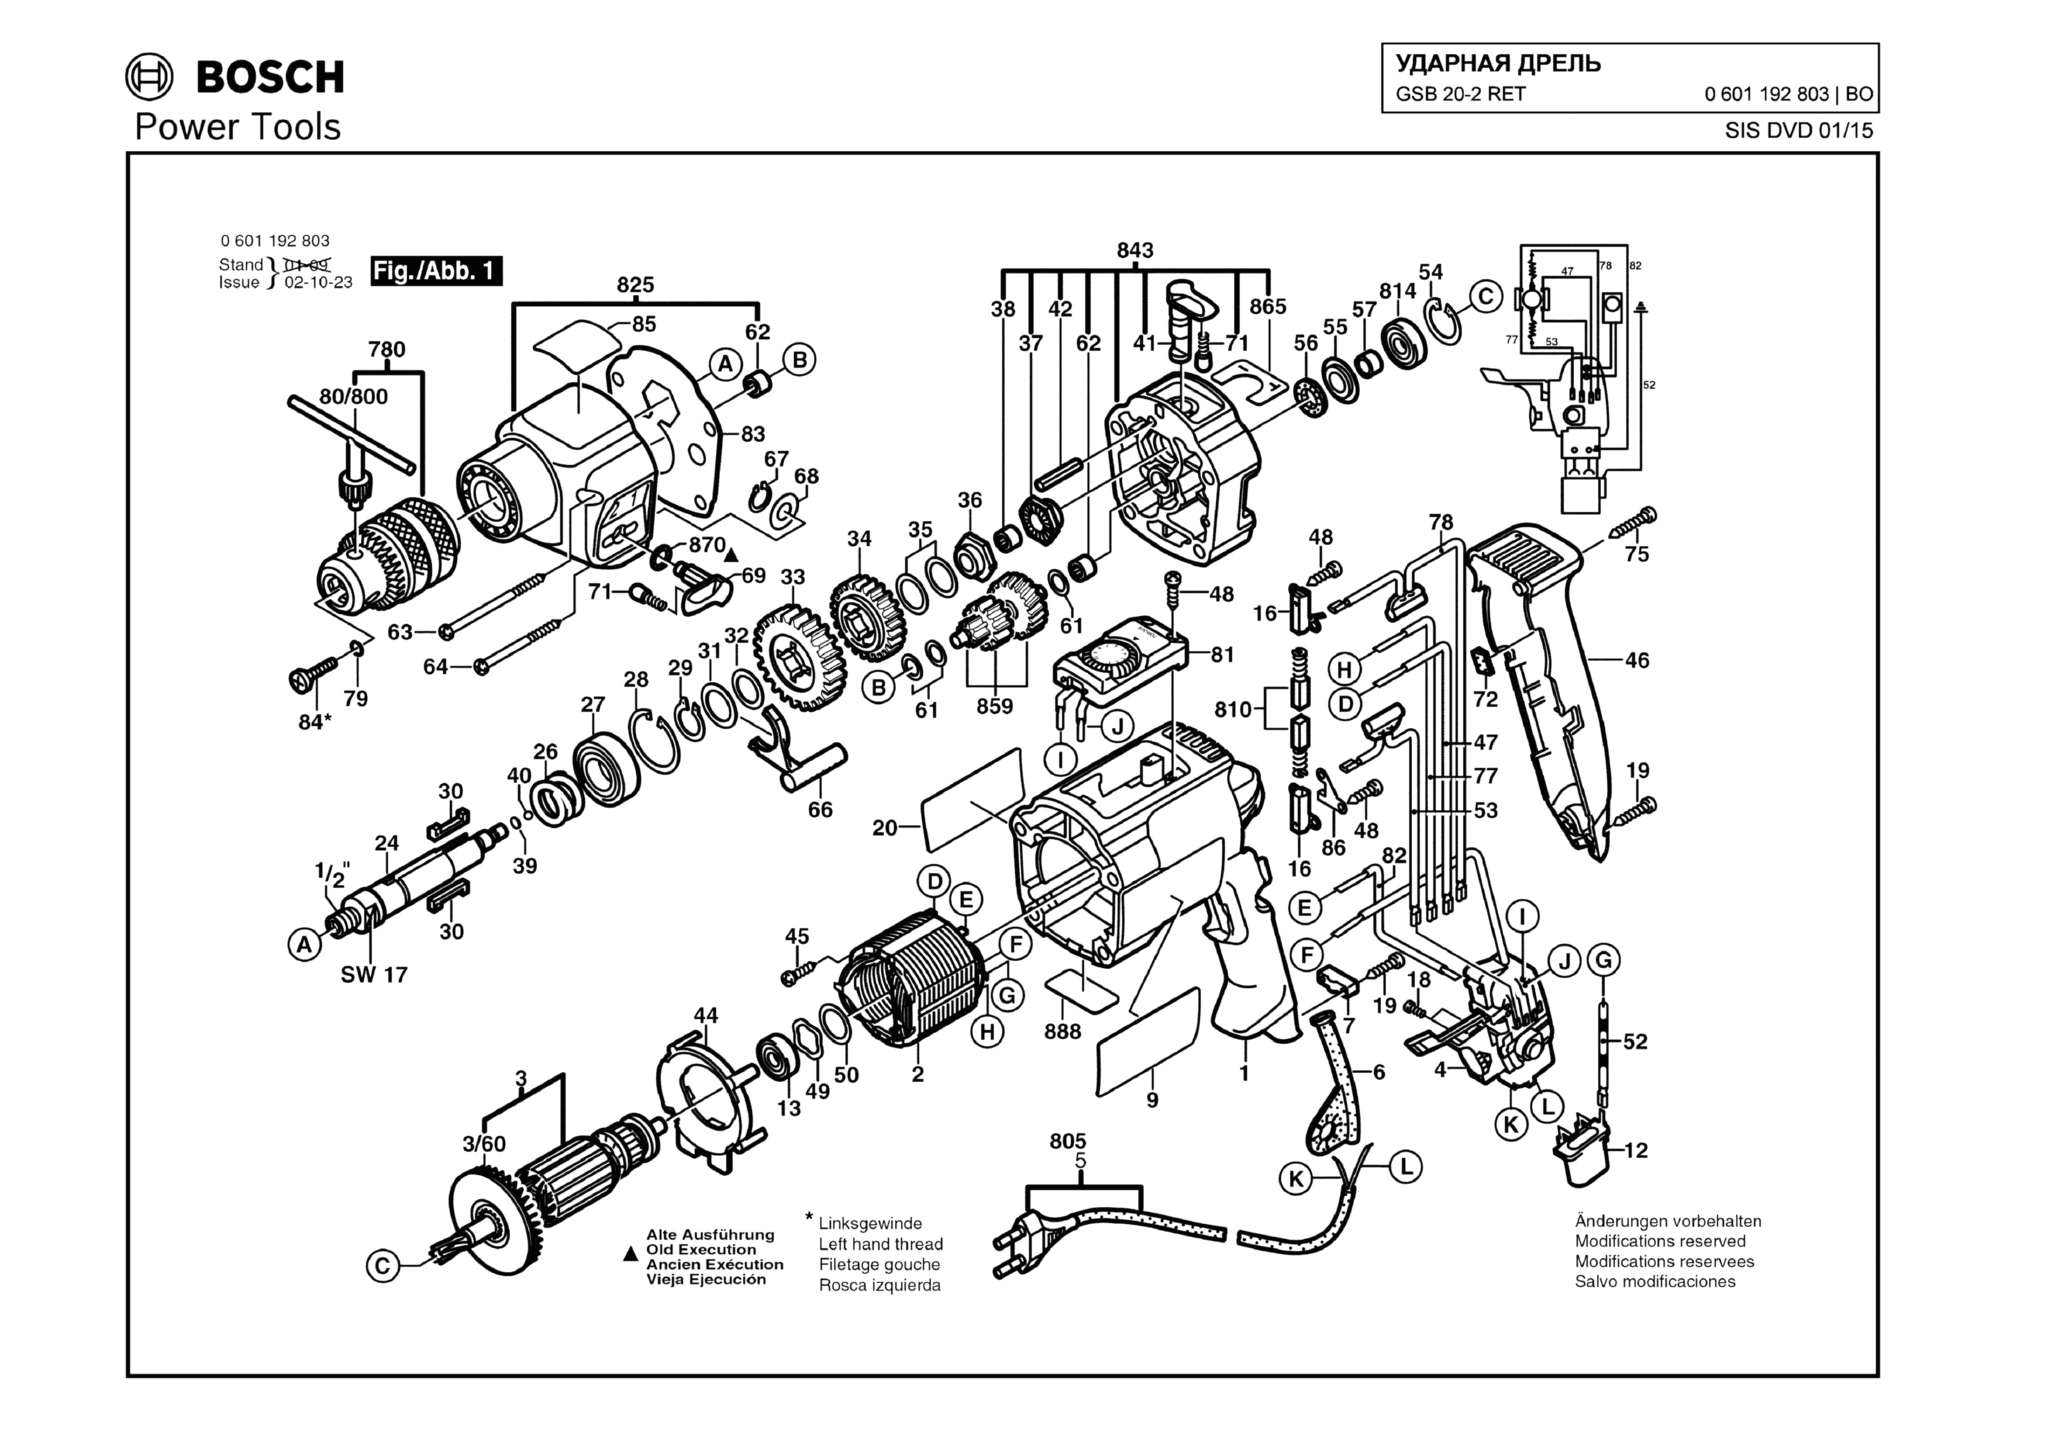 Запчасти, схема и деталировка Bosch GSB 20-2 RET (ТИП 0601192803)